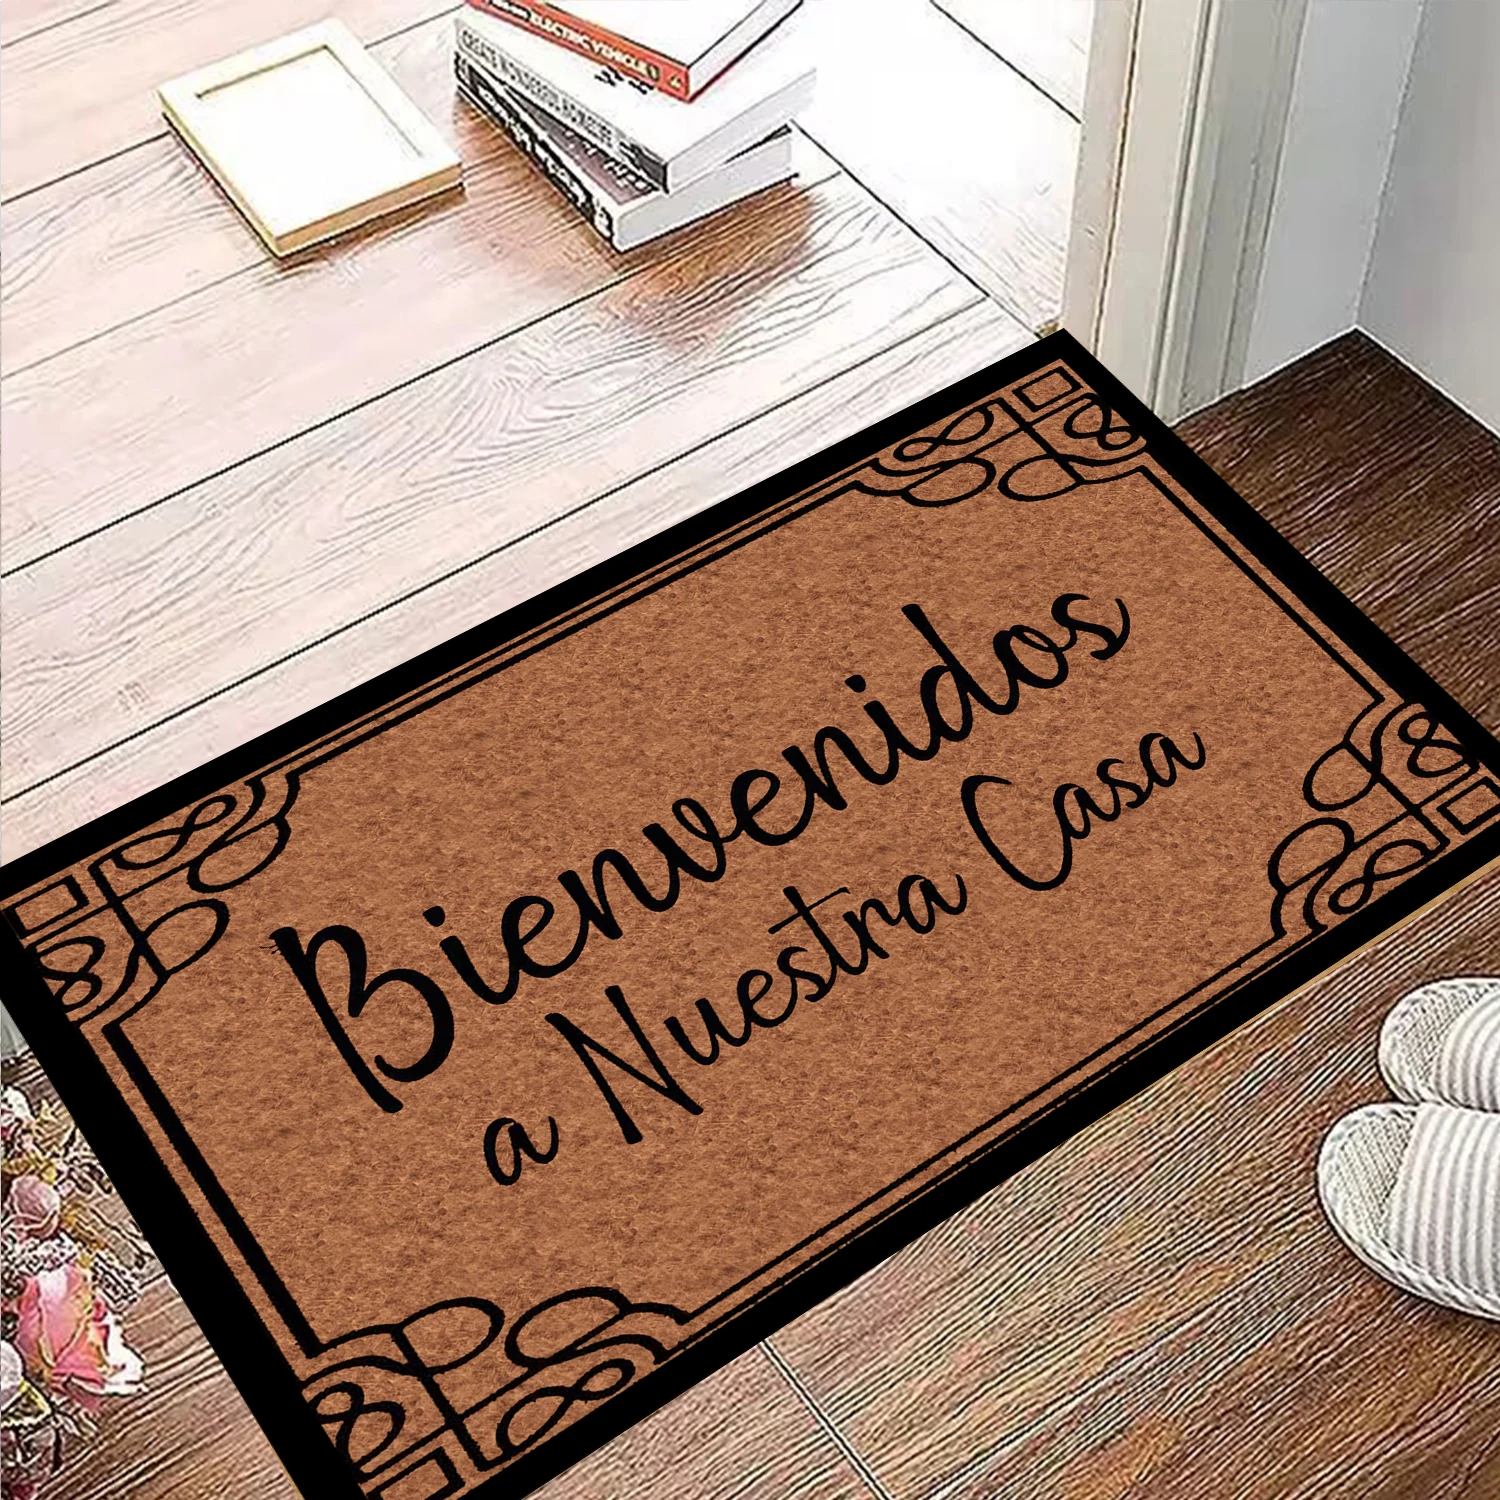 

Bienvenidos A Nuestra Casa Spanish Door Mat Rubber Welcome to My Home Doormat Housewarming Gift Funny Floor Mat Room Decor